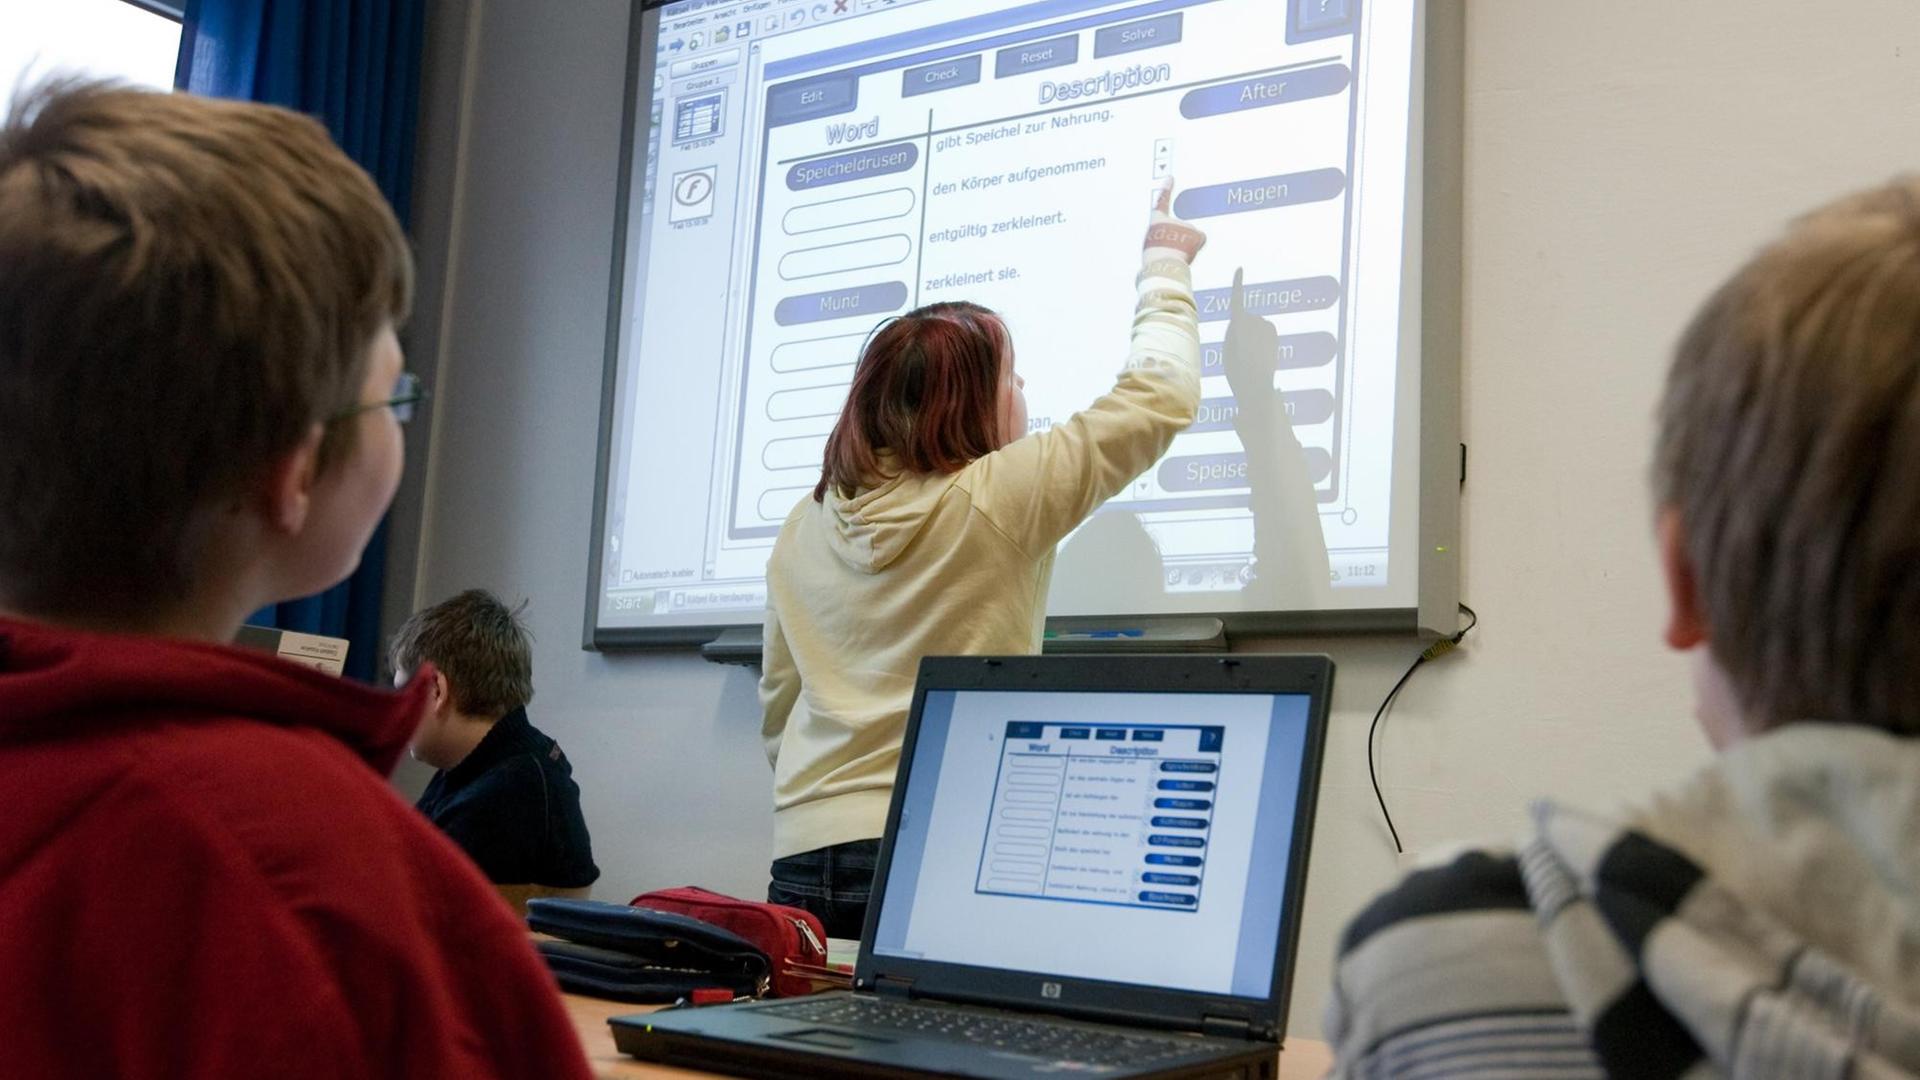 Schüler der Klasse sechs sitzen am Freitag (13.02.2009) an ihren Notebooks in einem Klassenraum der Gesamtschule Emsland in Lingen (Landkreis Emsland) und blicken auf eine interaktive Tafel ein sogenanntes Smartboard.